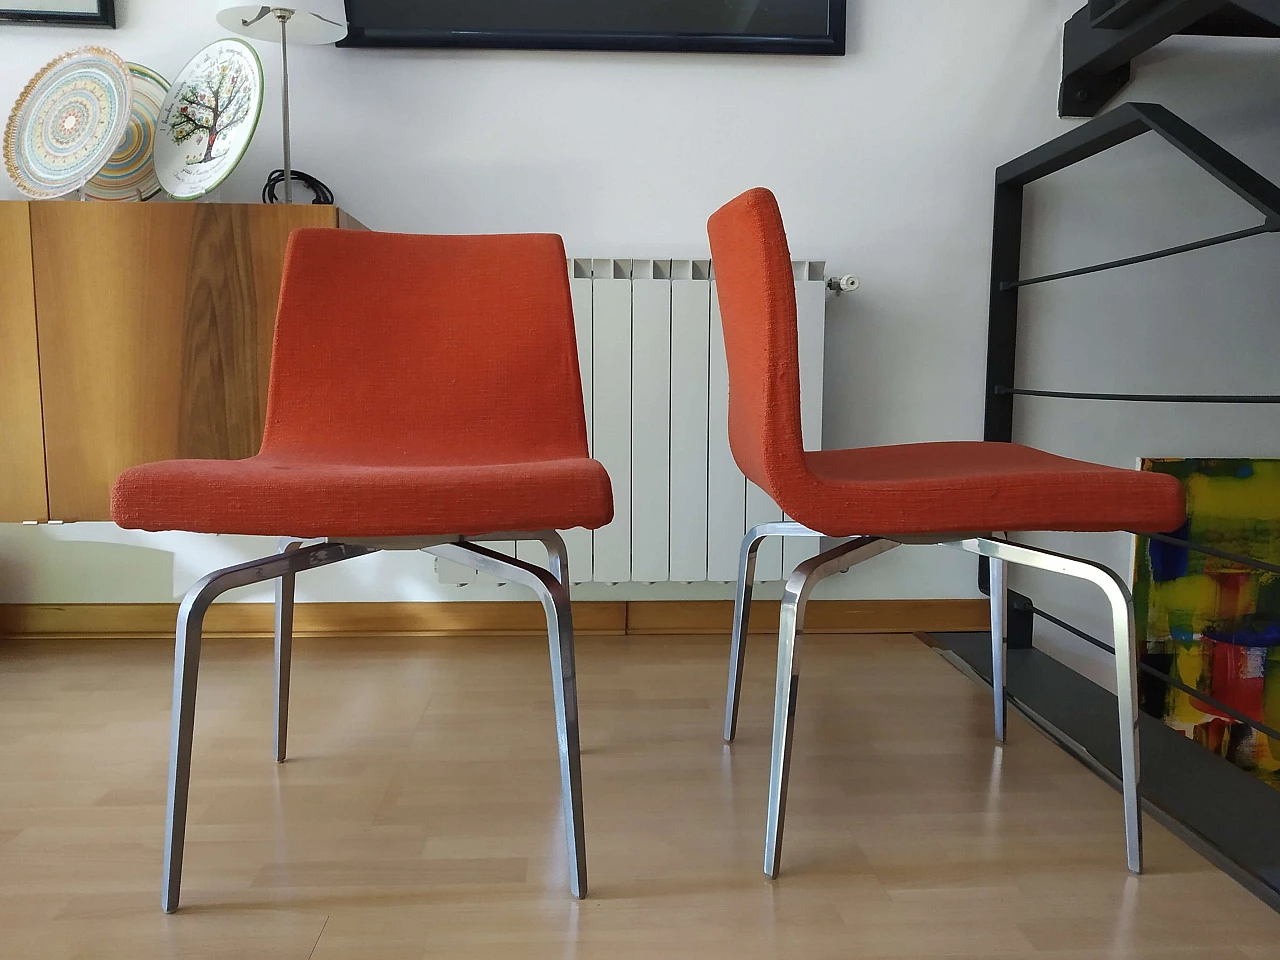 4 Hella Chairs by Mauro Lipparini for MisuraEmme 1477288